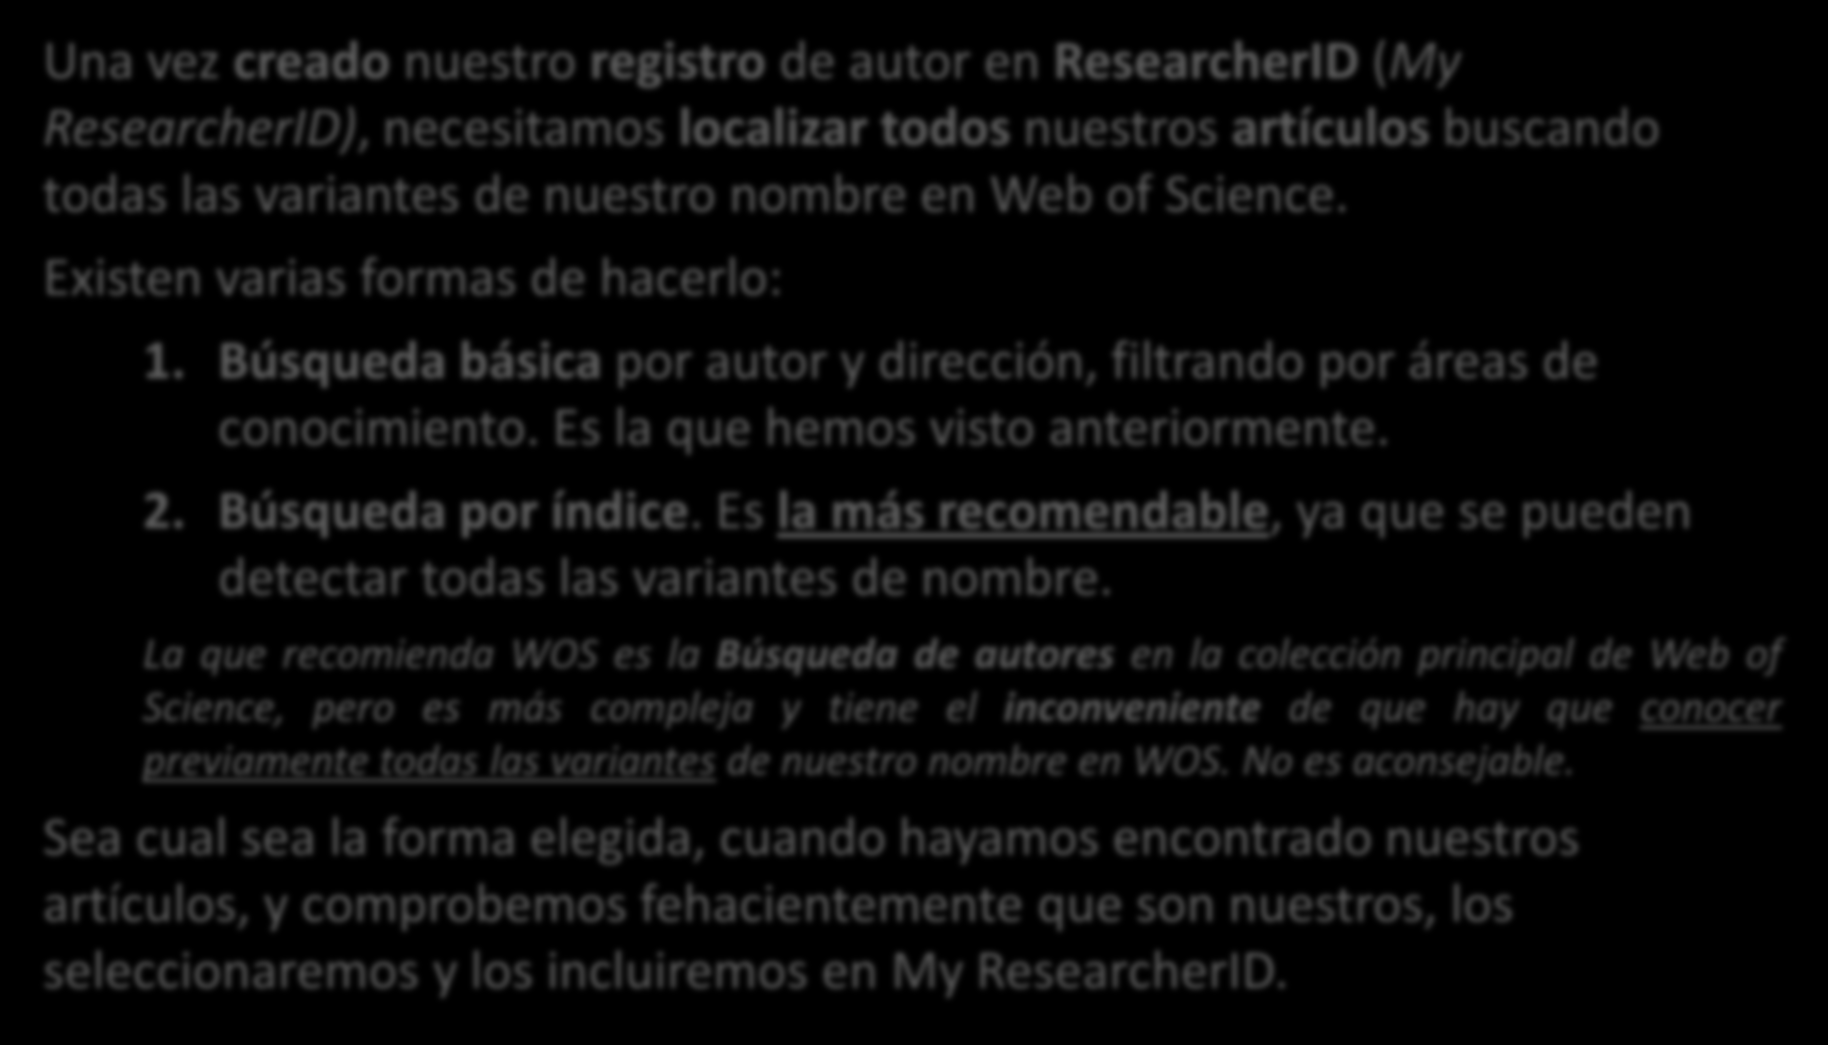 Una vez creado nuestro registro de autor en ResearcherID (My ResearcherID), necesitamos localizar todos nuestros artículos buscando todas las variantes de nuestro nombre en Web of Science.